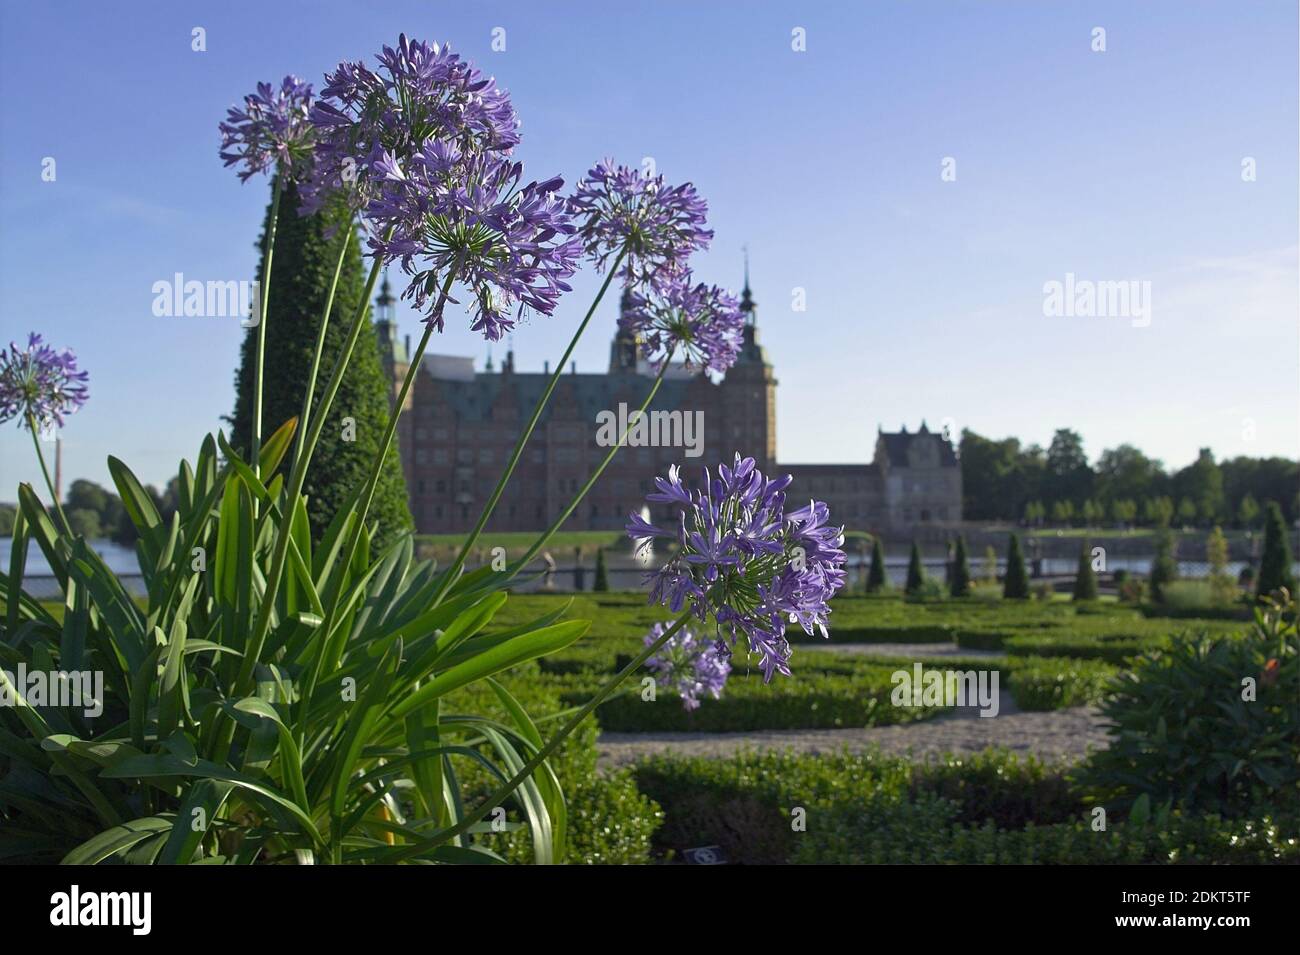 Danimarca, Dänemark: Castello di Frederiksborg - Vista dai giardini del palazzo. Schloss Frederiksborg - Blick von den Schlossgärten; Frederiksborg slot; Foto Stock